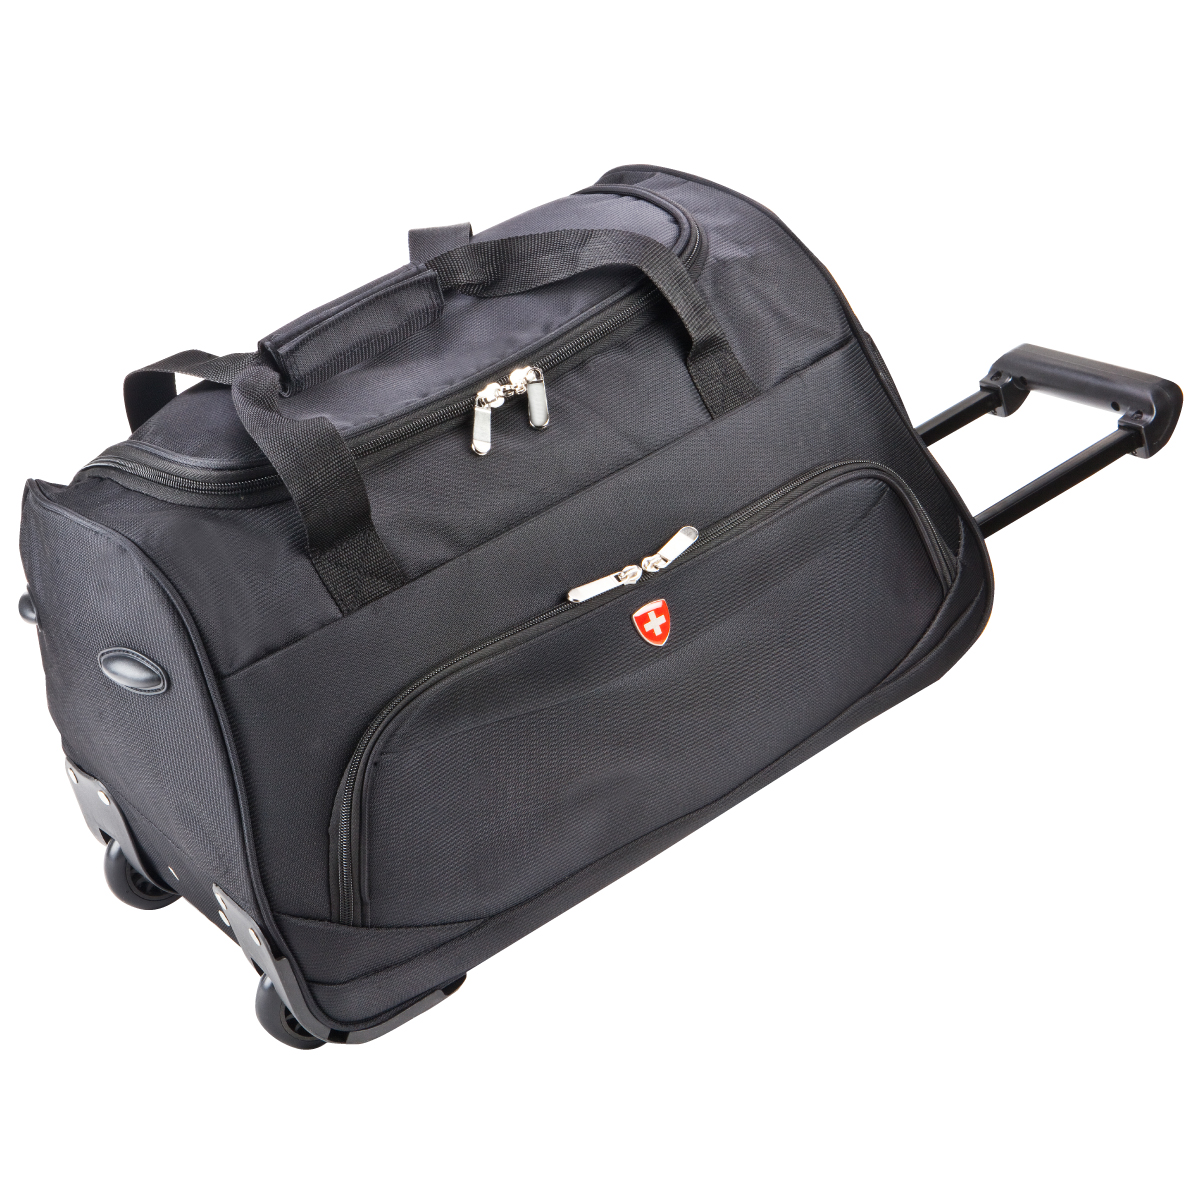 לוגנו SWISS -  תיק טרולי  לנסיעות “20, משמש גם כתיק גם כמזוודה לנסיעות. 
כל מה שצריך בתיק אחד: גם תיק וגם מזוודת טרולי לנסיעות וטיסות.
שילוב של פונקציונליות ברמה גבוהה ואיכותית ועיצוב. 
כיסים רחבים לאחסון גאדג